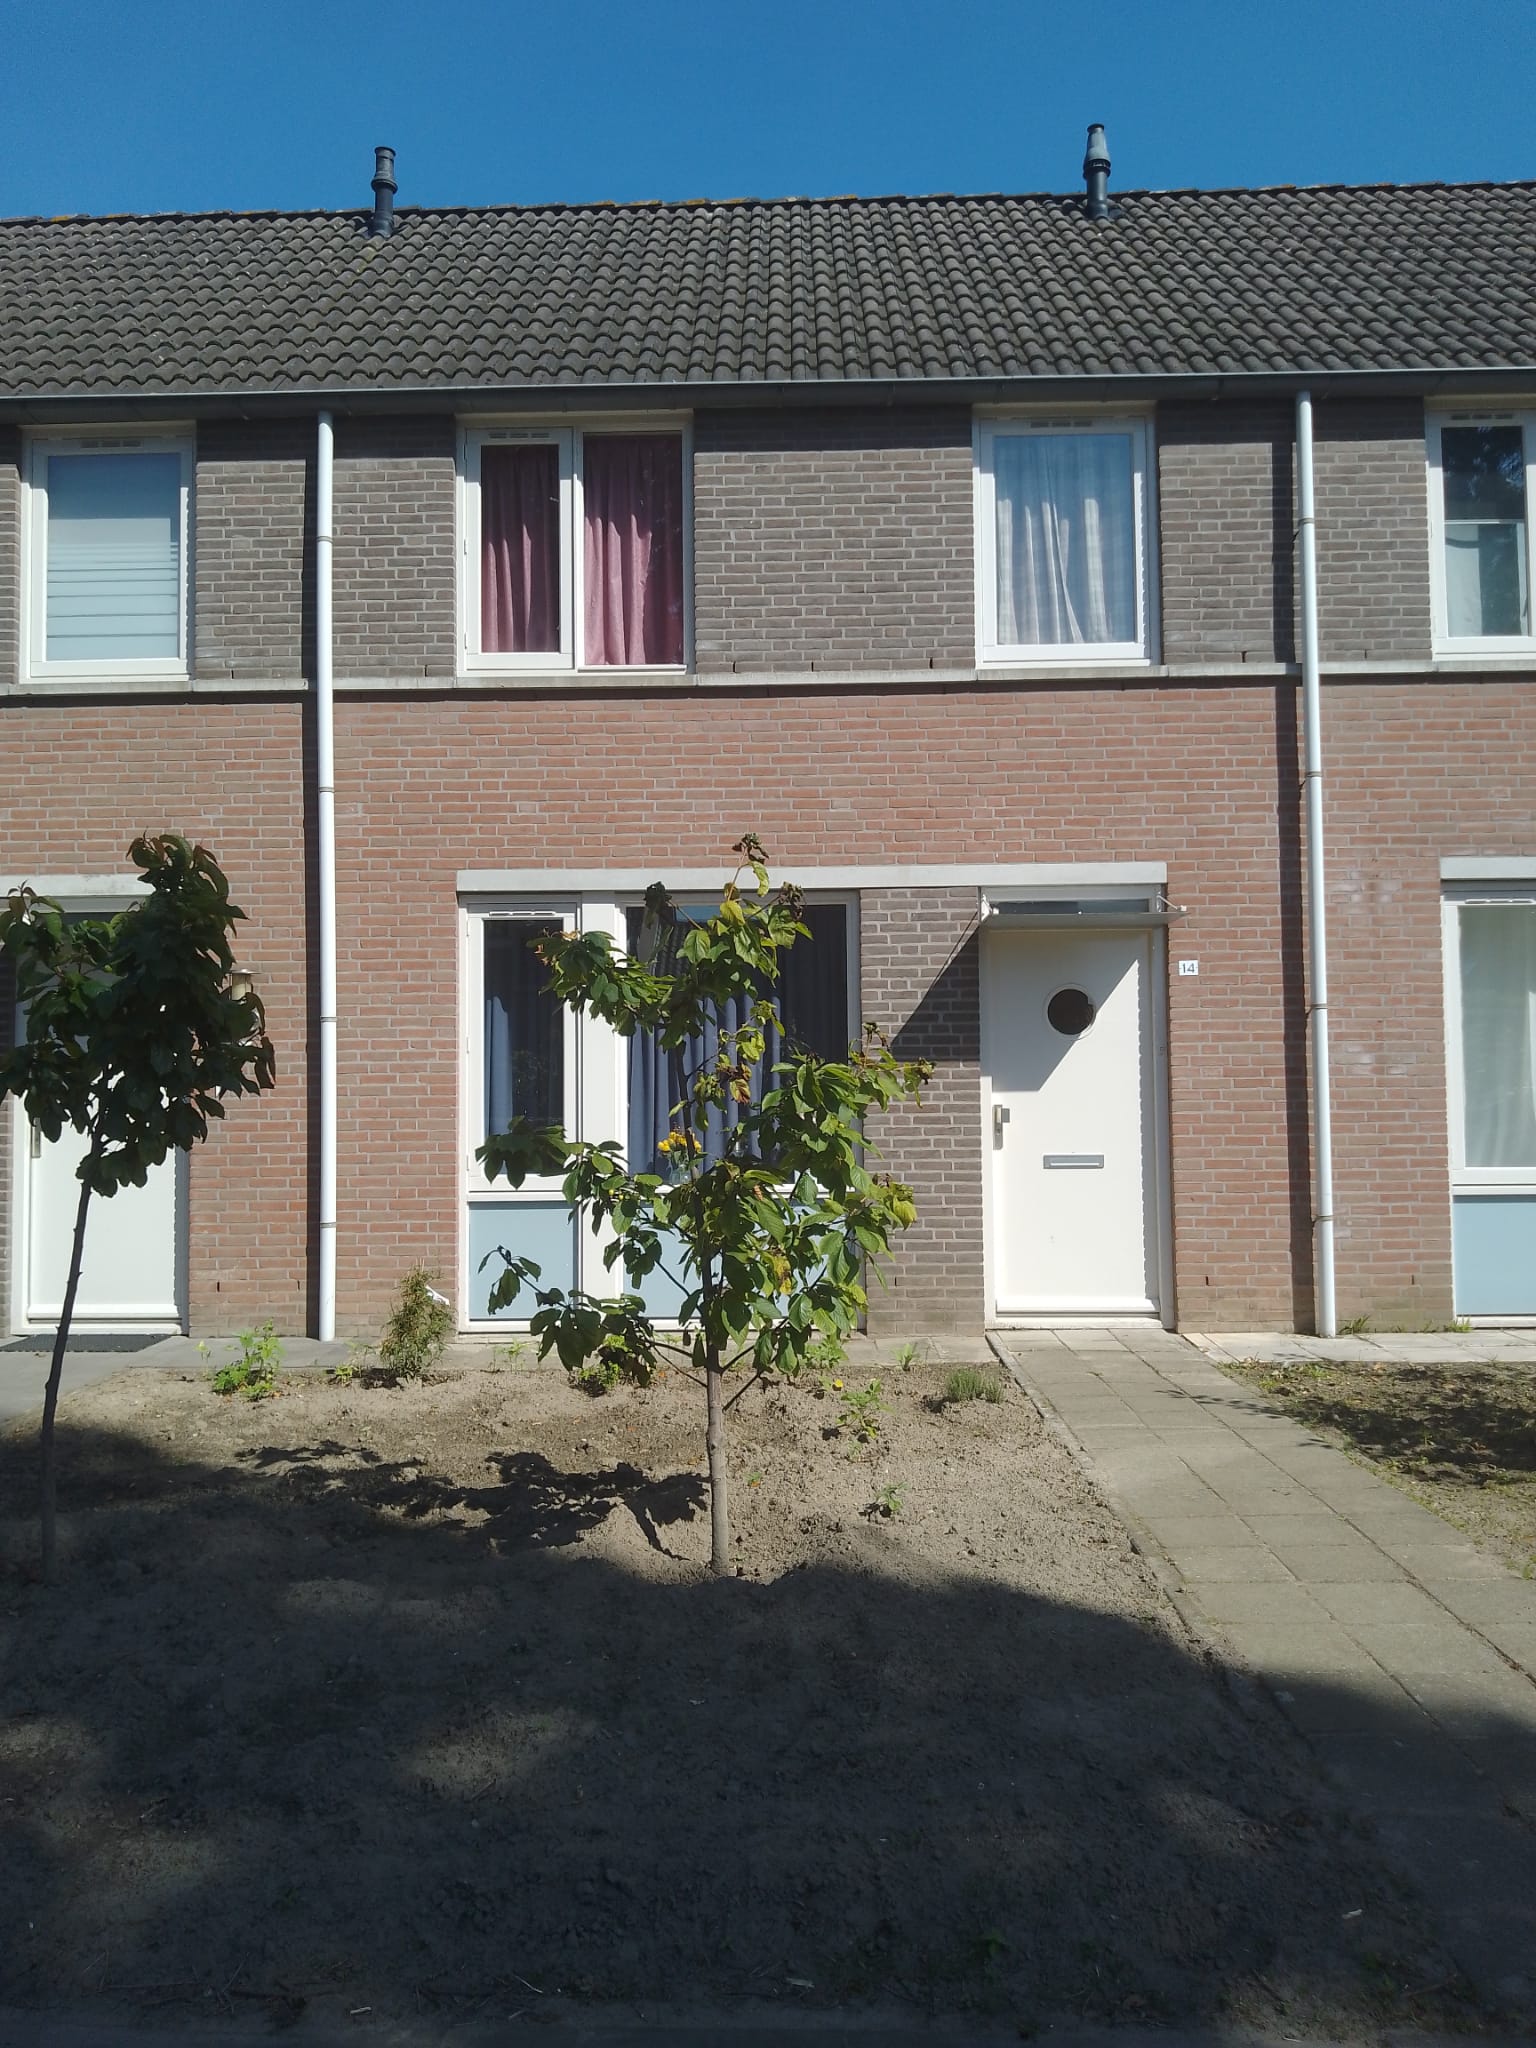 Rogier van Leefdaelstraat 14, 5081 JL Hilvarenbeek, Nederland